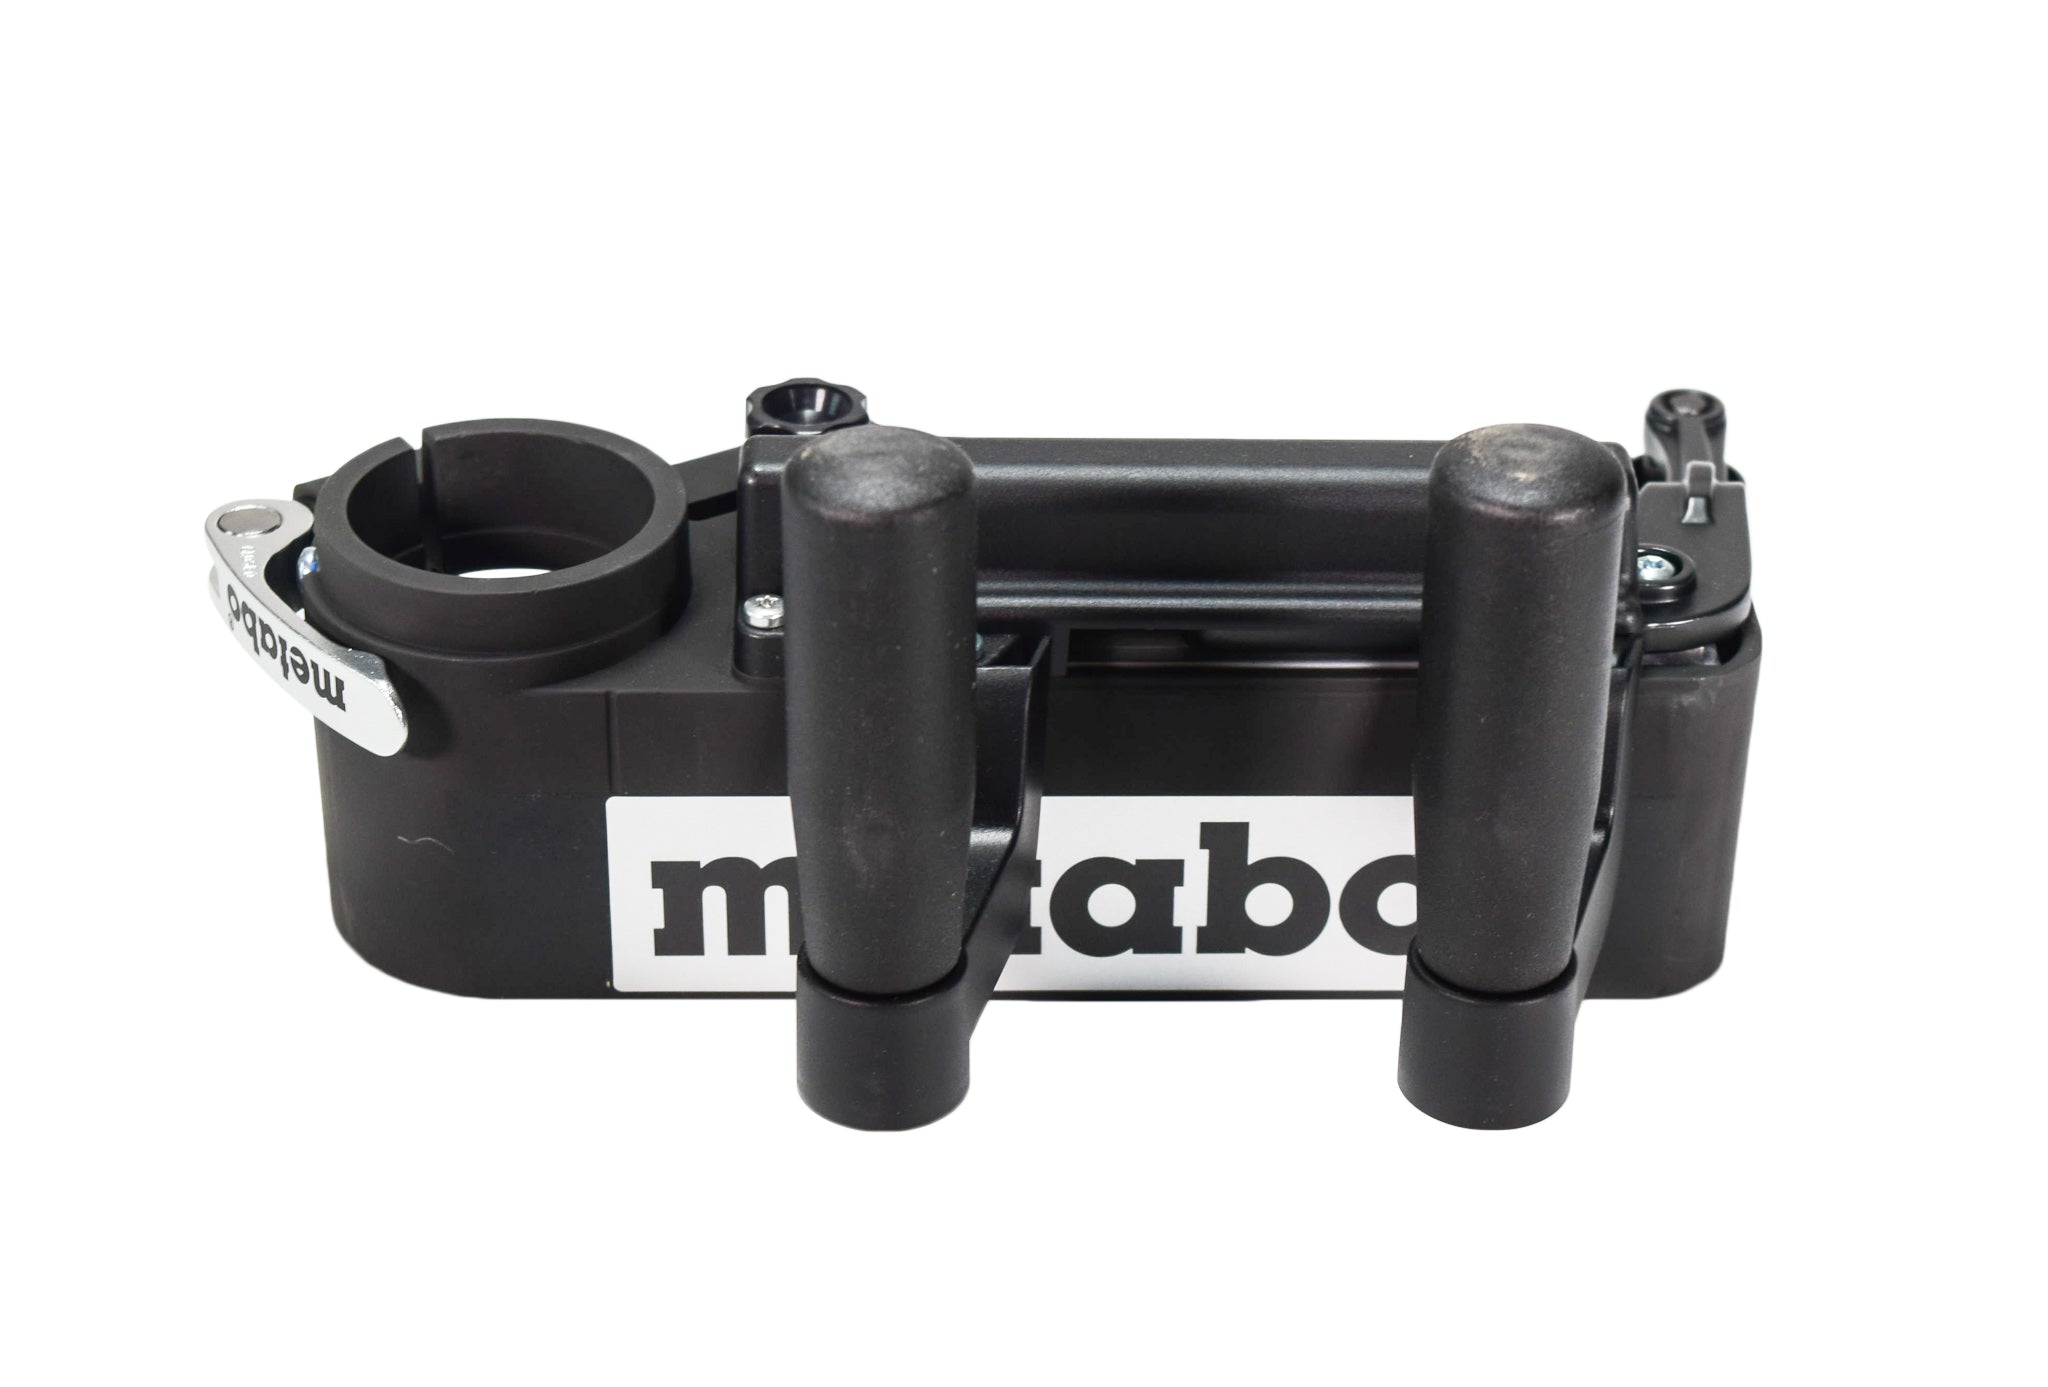 Metabo 600192850 RB18LTX60 18V Cordless Pipe Tube Belt Sander